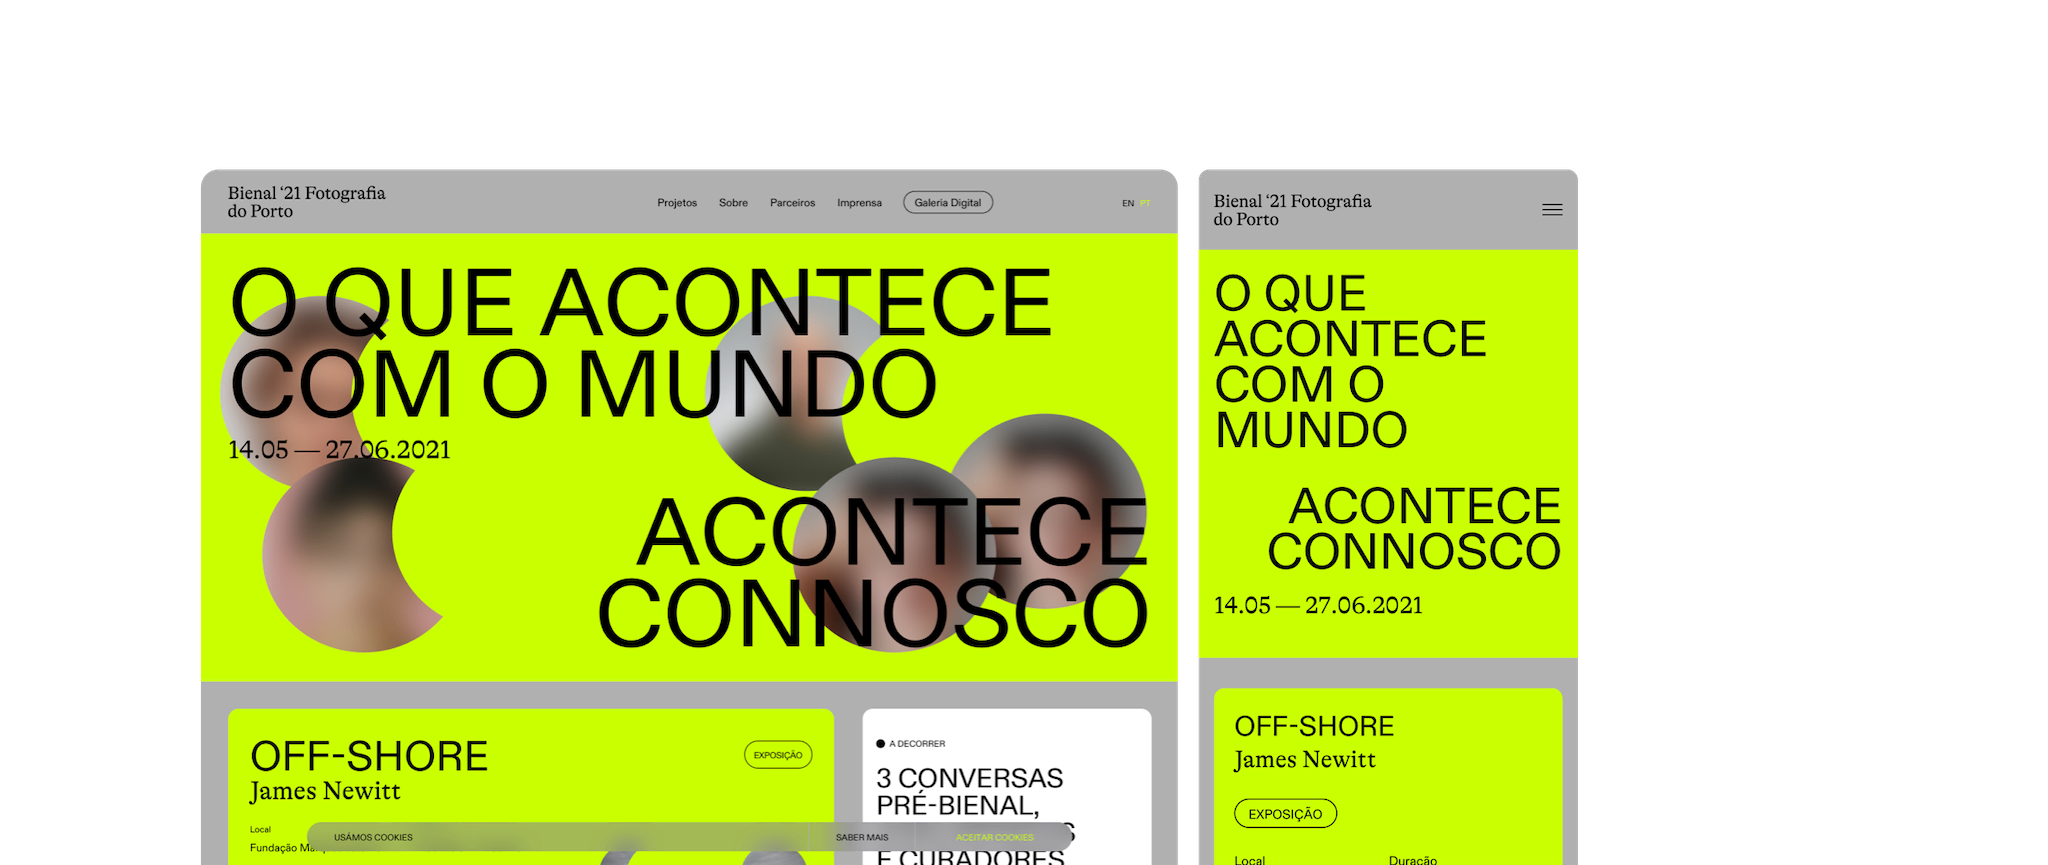 "Bienale Fotografia do Porto 2021" site home page.